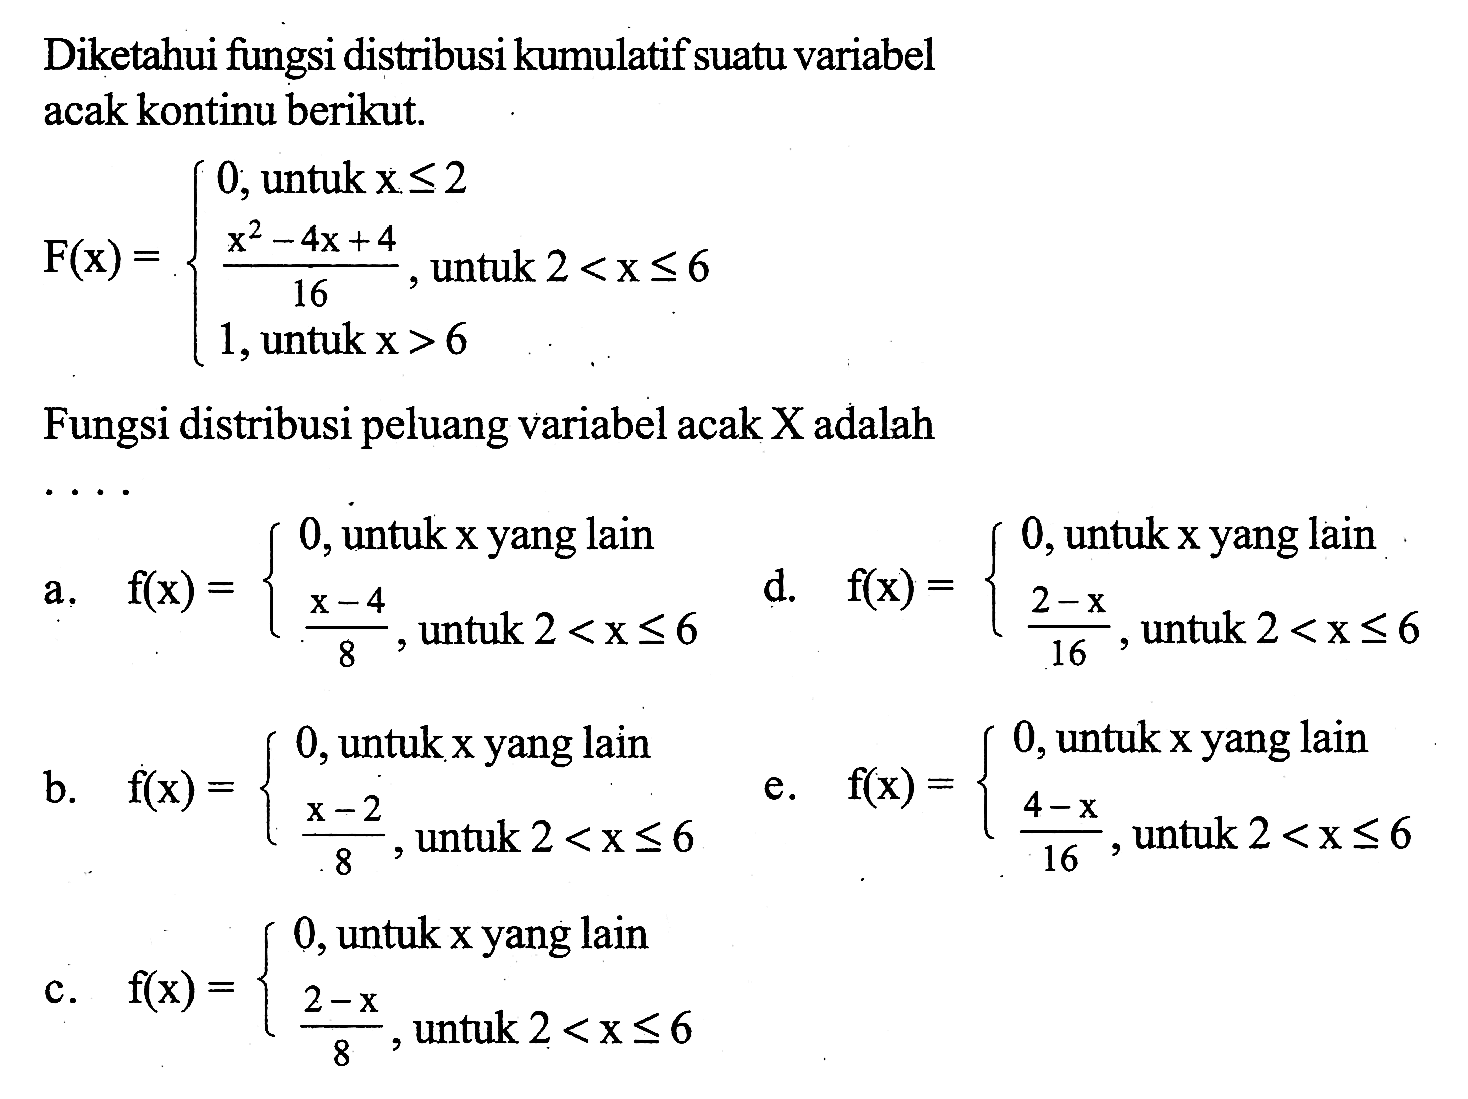 Diketahui fungsi distribusi kumulatif suatu variabel acak kontinu berikut.F(x)=0,  untuk x<=2 (x^2-4x+4)/16, untuk 2<x<= 6 1, untuk x>6Fungsi distribusi peluang variabel acak  X  adalah ...